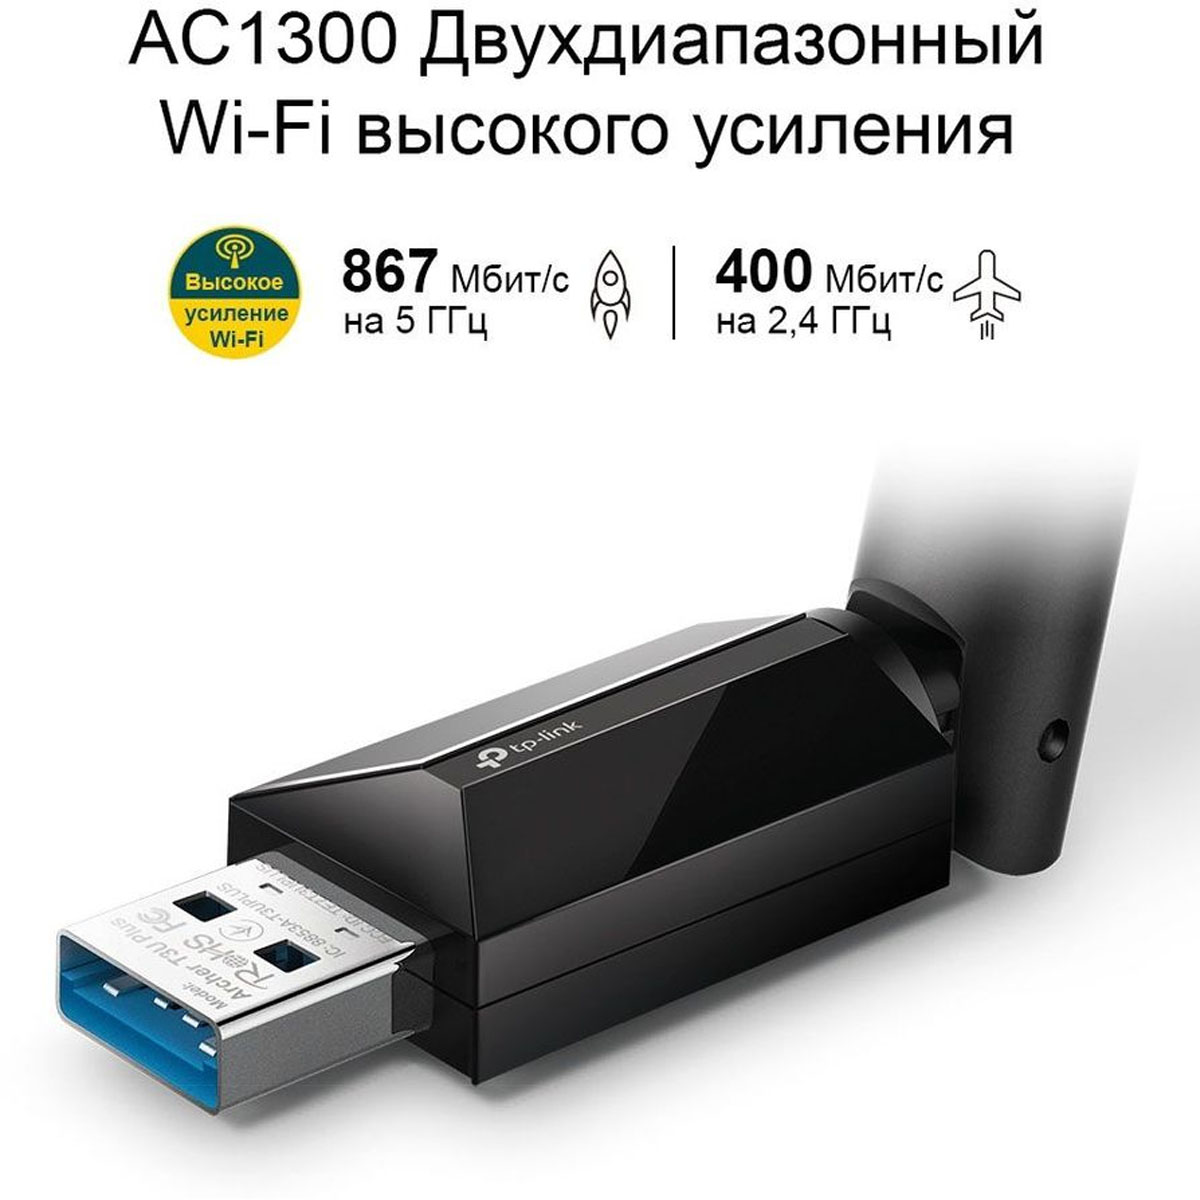 Беспроводной Wi-Fi USB адаптер TP-LINK AC1300 Archer T3U Plus, цвет черный